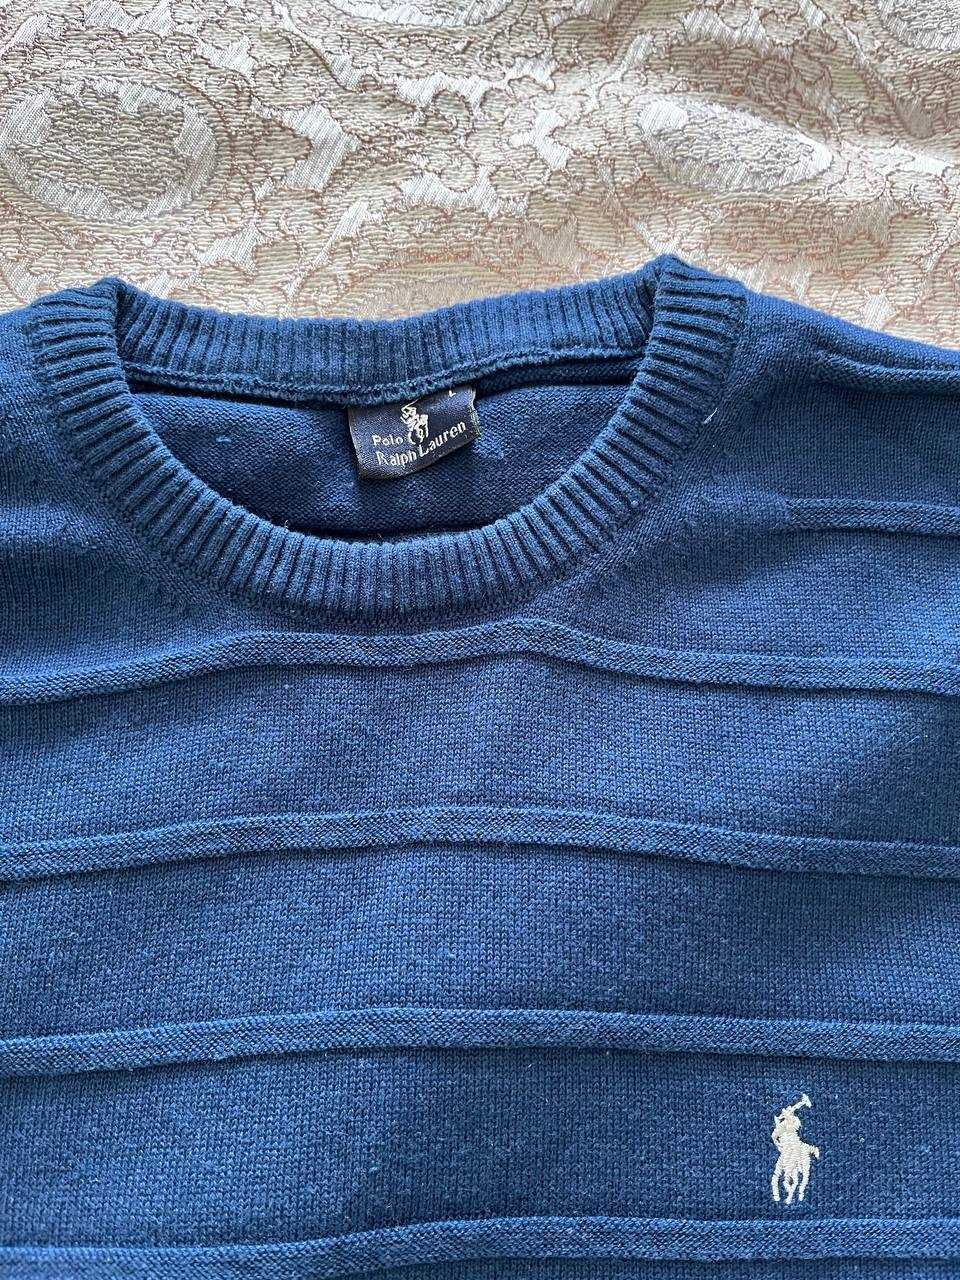 Синій джемпер чоловічий  Polo Ralph Lauren (оригінальний)